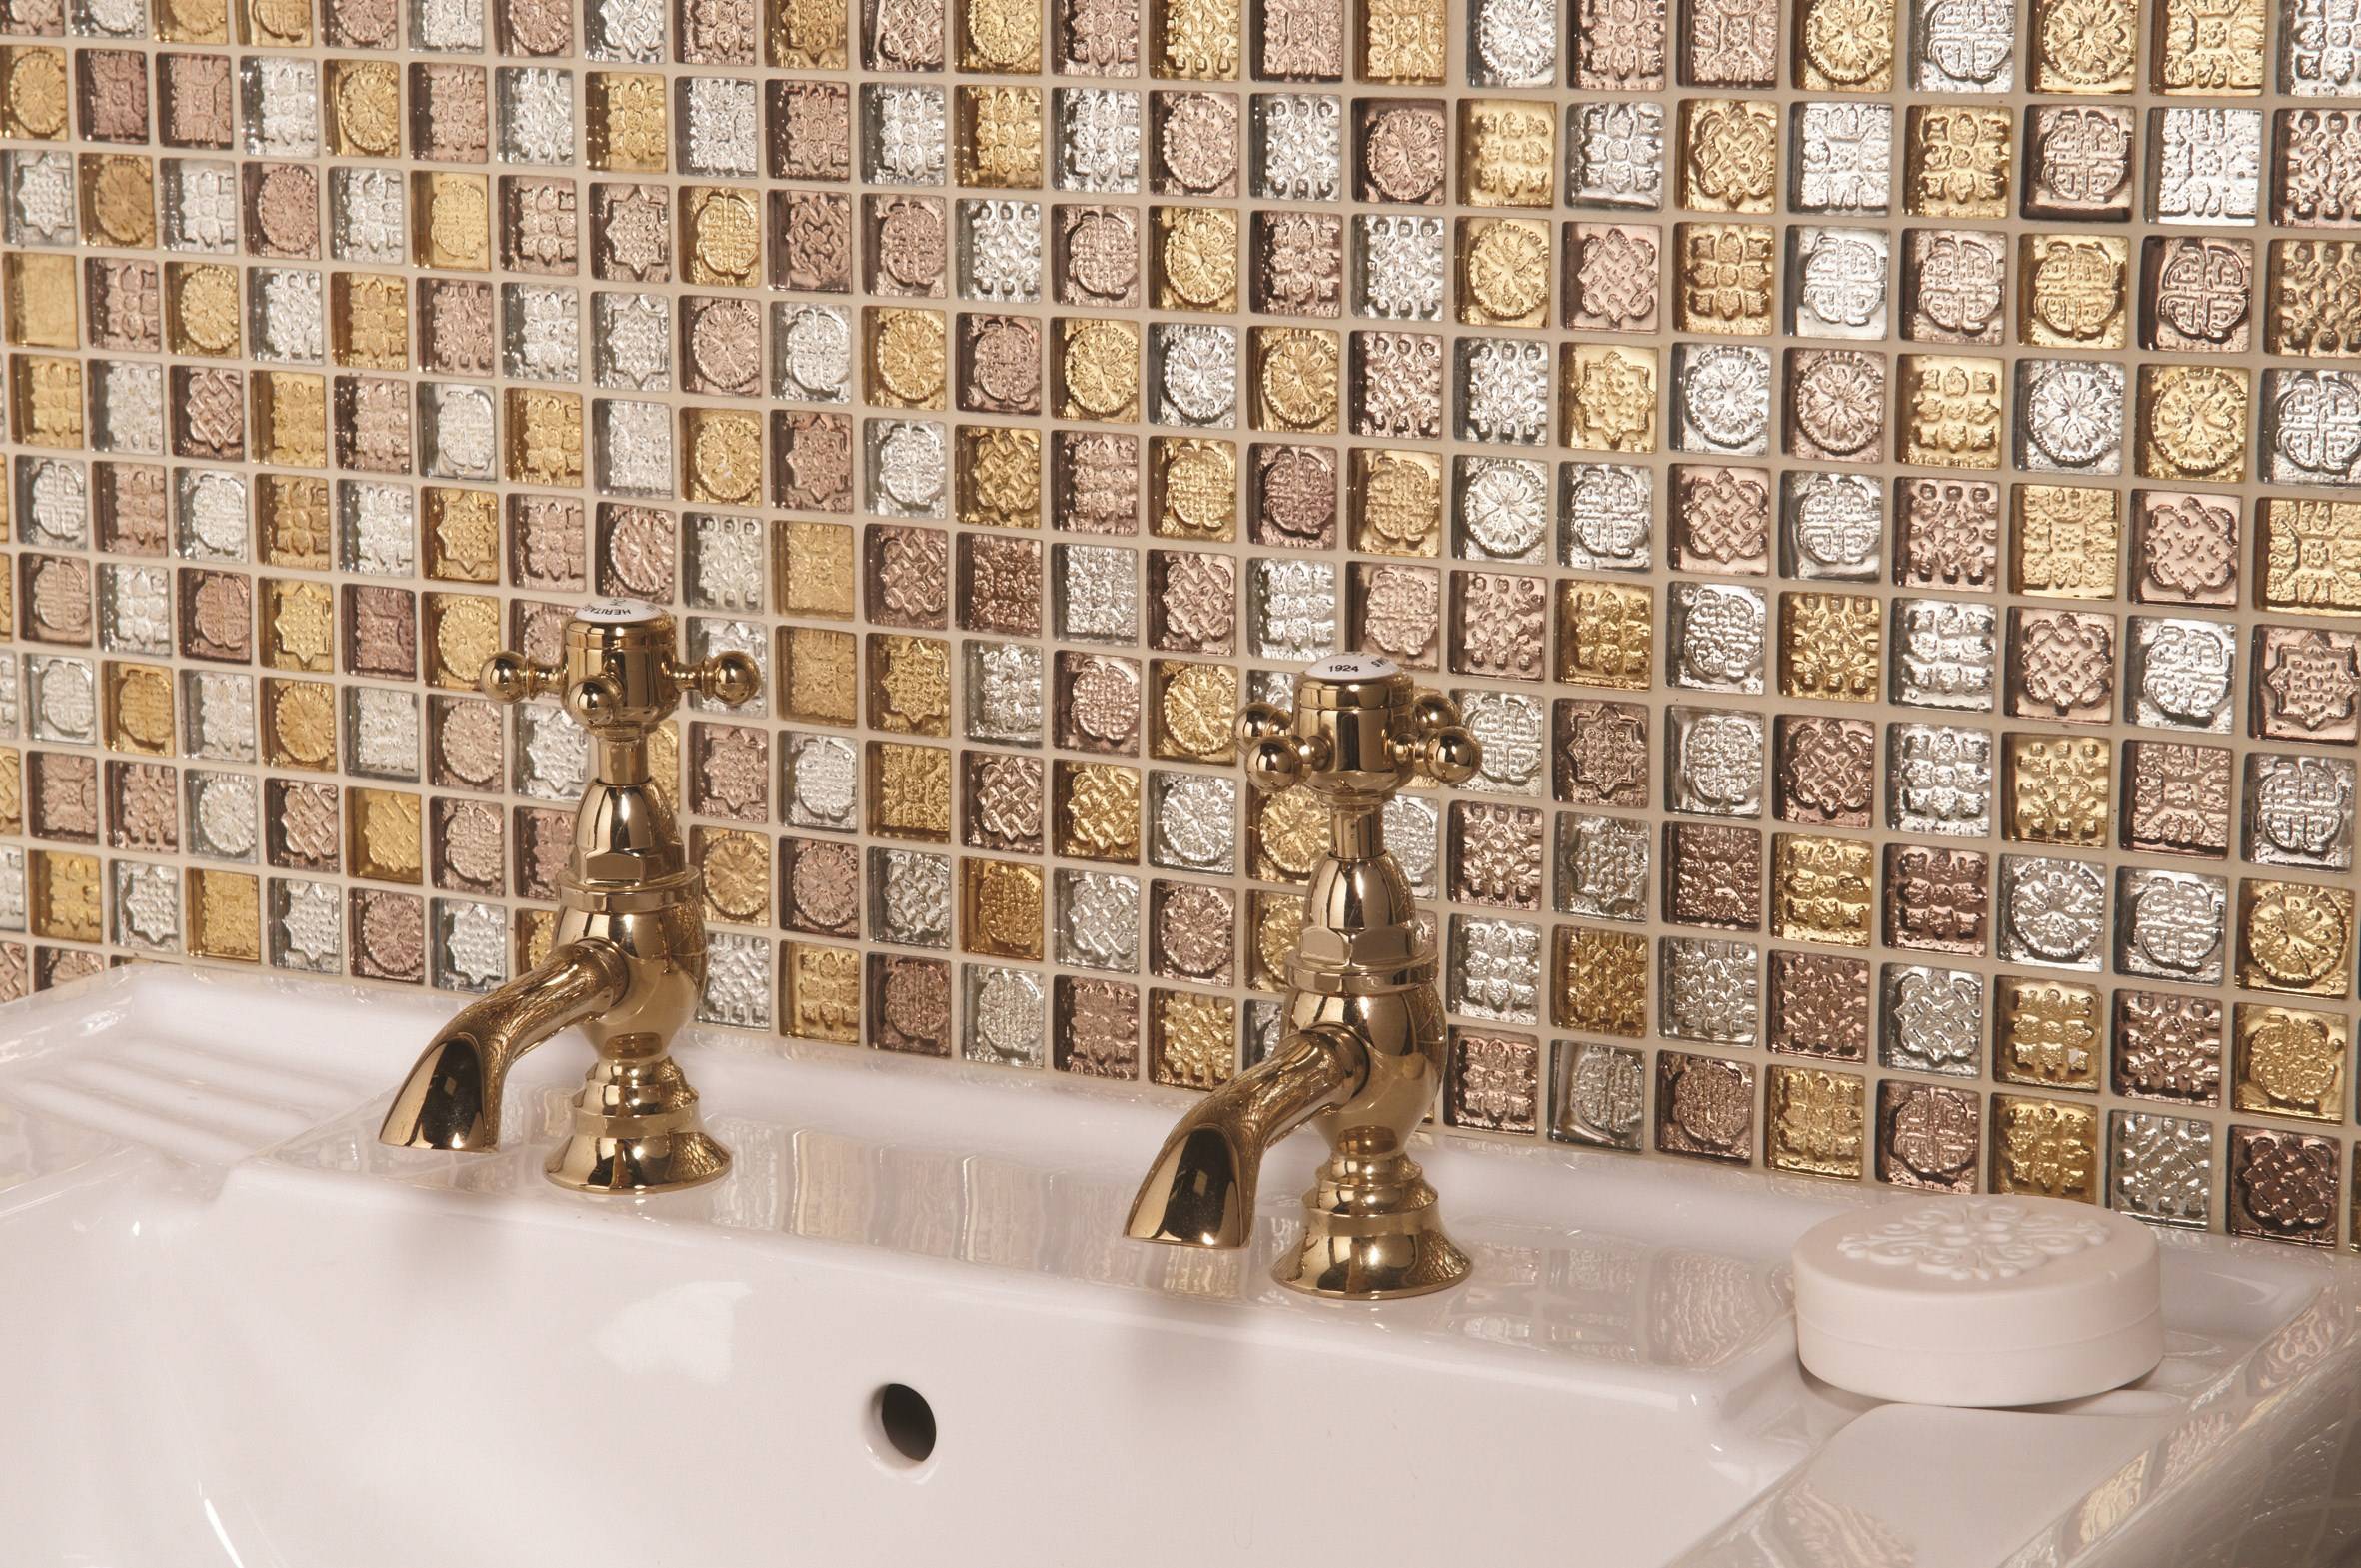 Купить мозаику для ванной plitka mosaica ru. Смальтовая мозаика в интерьере. Мозаика для ванной. Плитка для мозаики. Стекляная мозайка в интертере.